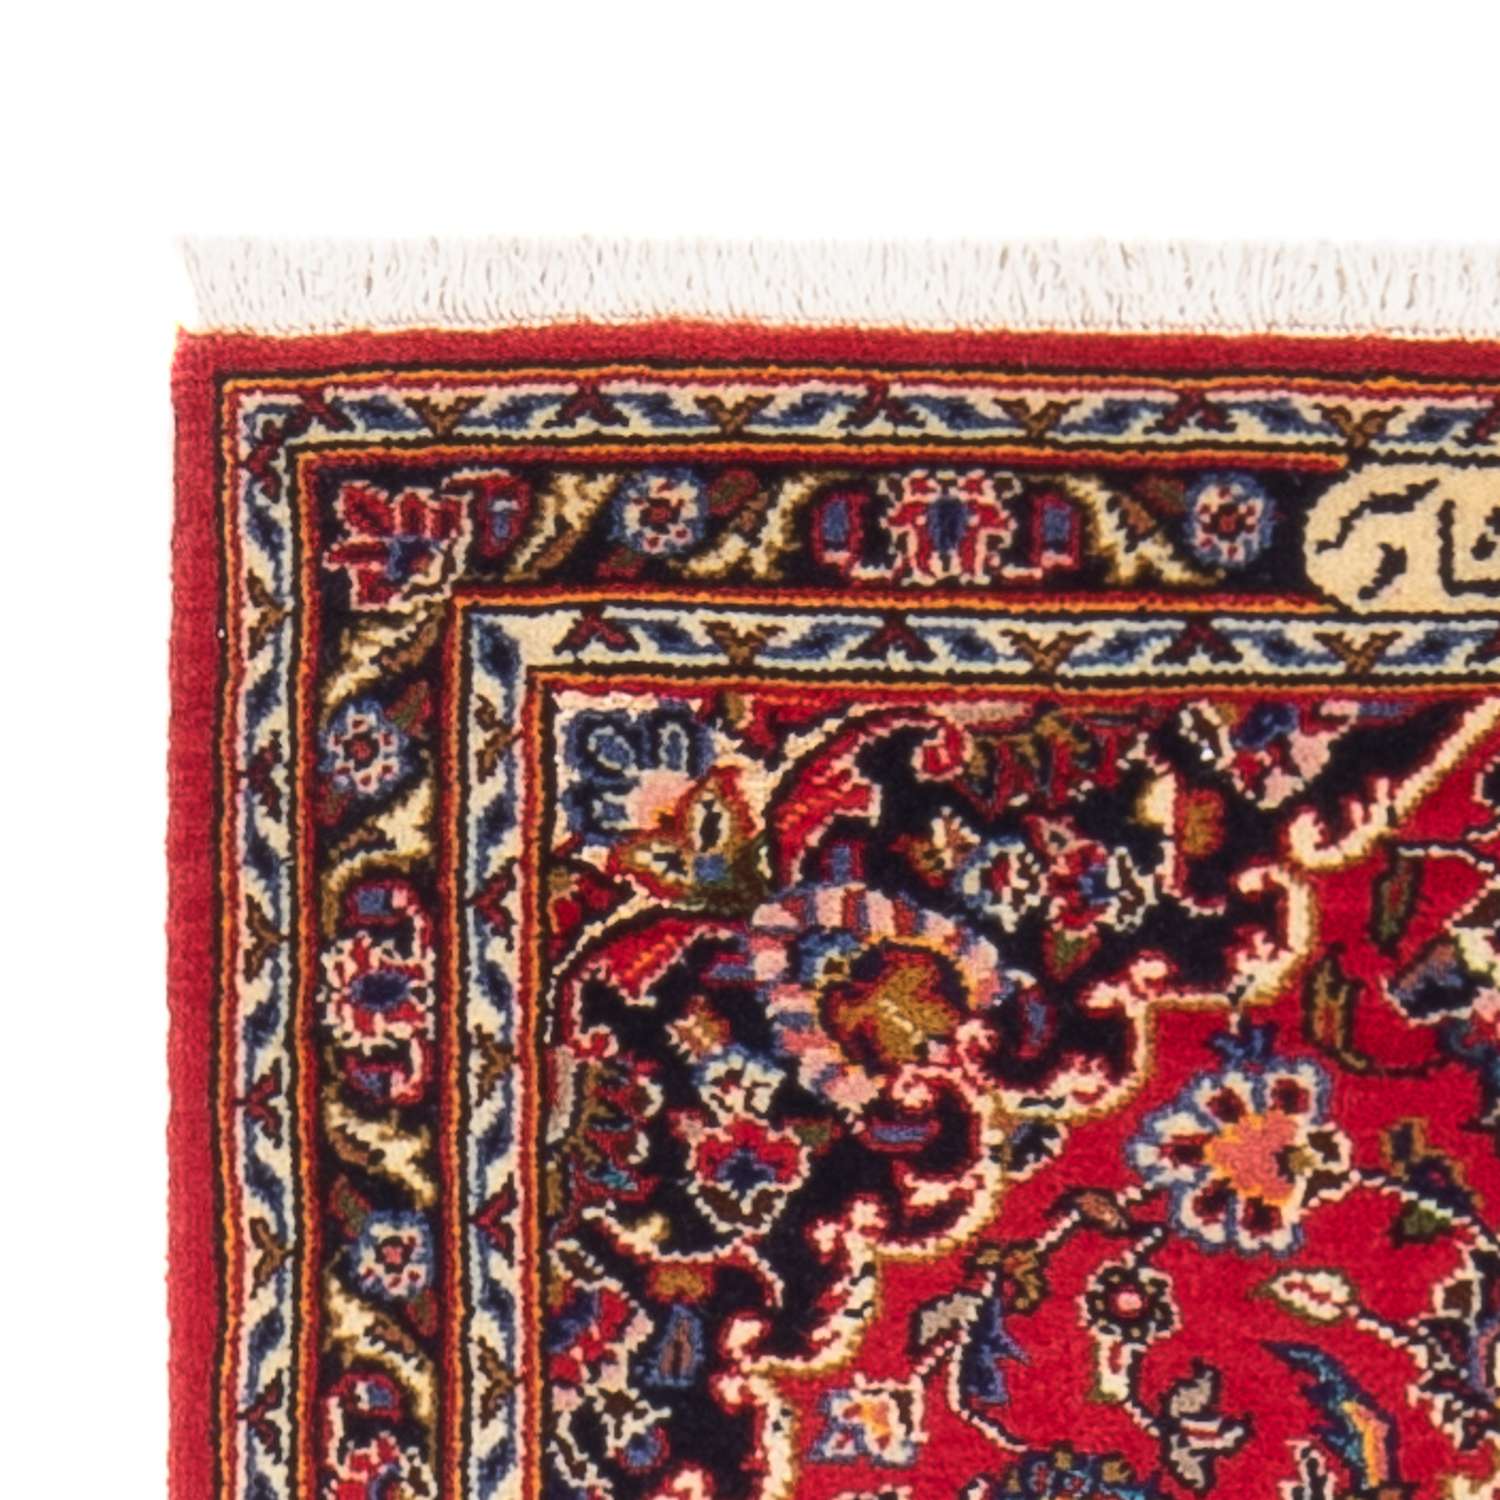 Tapete persa - Keshan - 127 x 67 cm - vermelho